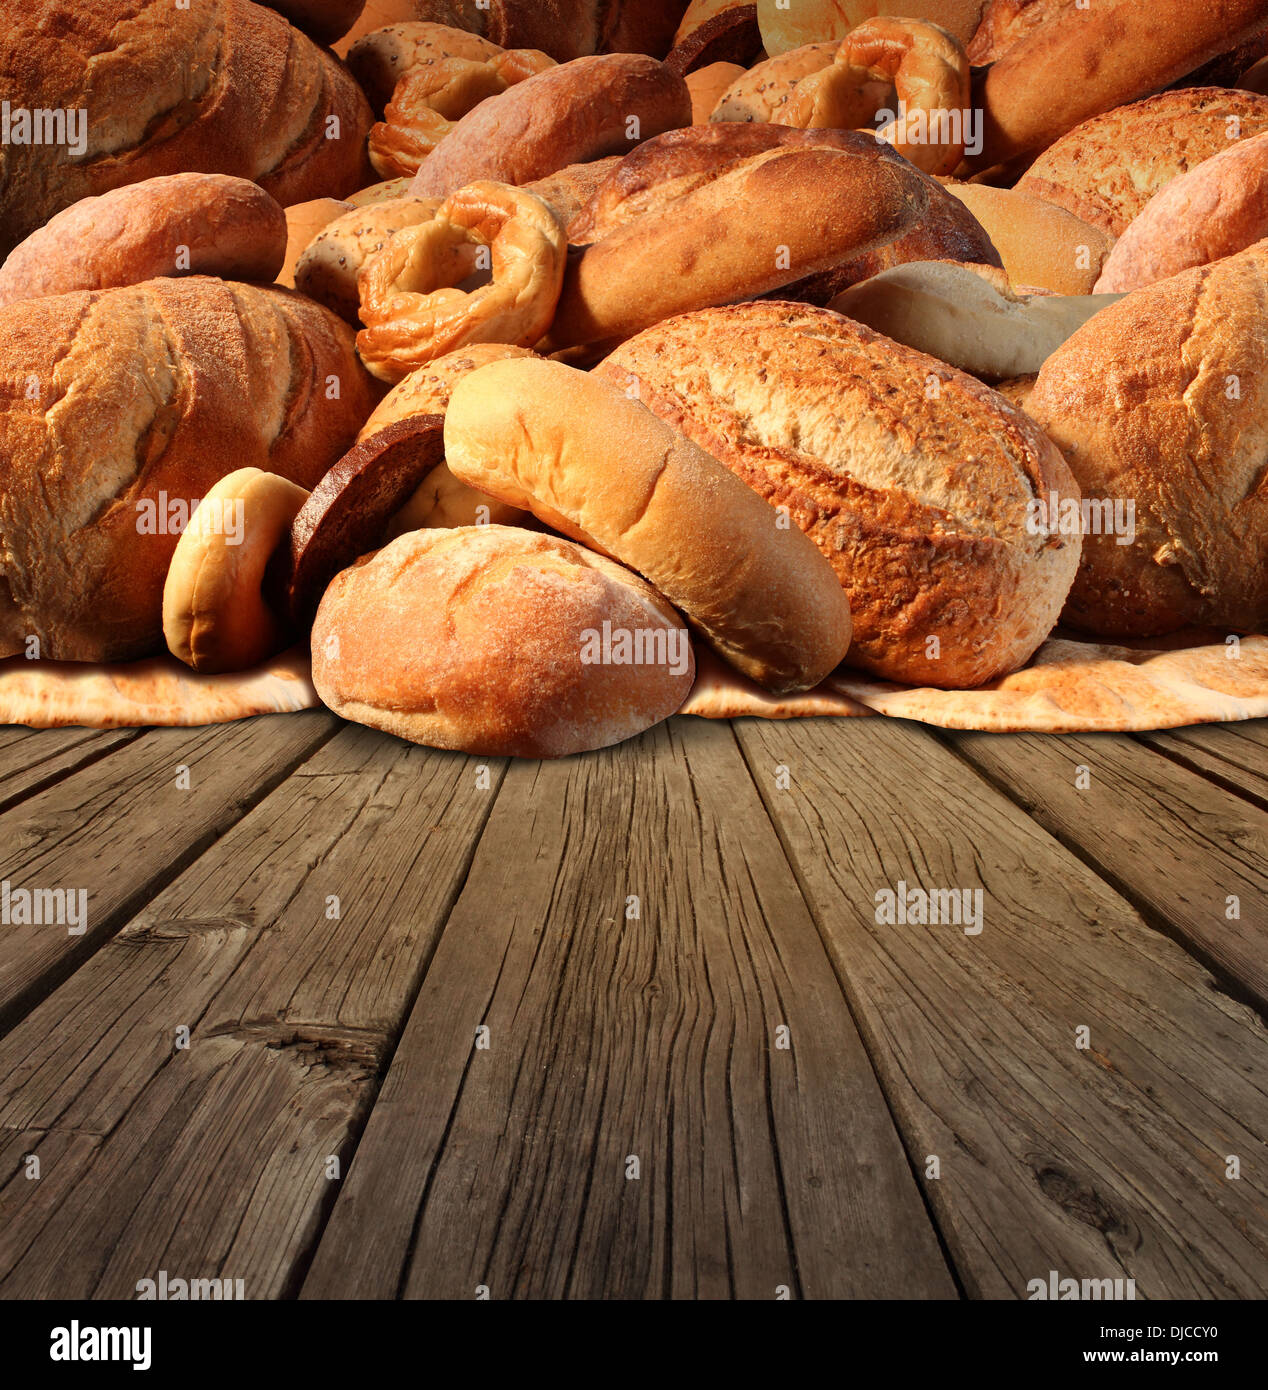 Bäckerei Brot-Food-Konzept auf einem alten altmodischen Holztisch Hintergrund mit einer Gruppe von Backwaren aus Vollkorn und natürlichen gemacht als Pumpernickel Pita Focaccia Bagel mit internationalen Brot Körner und französisches Baguette. Stockfoto